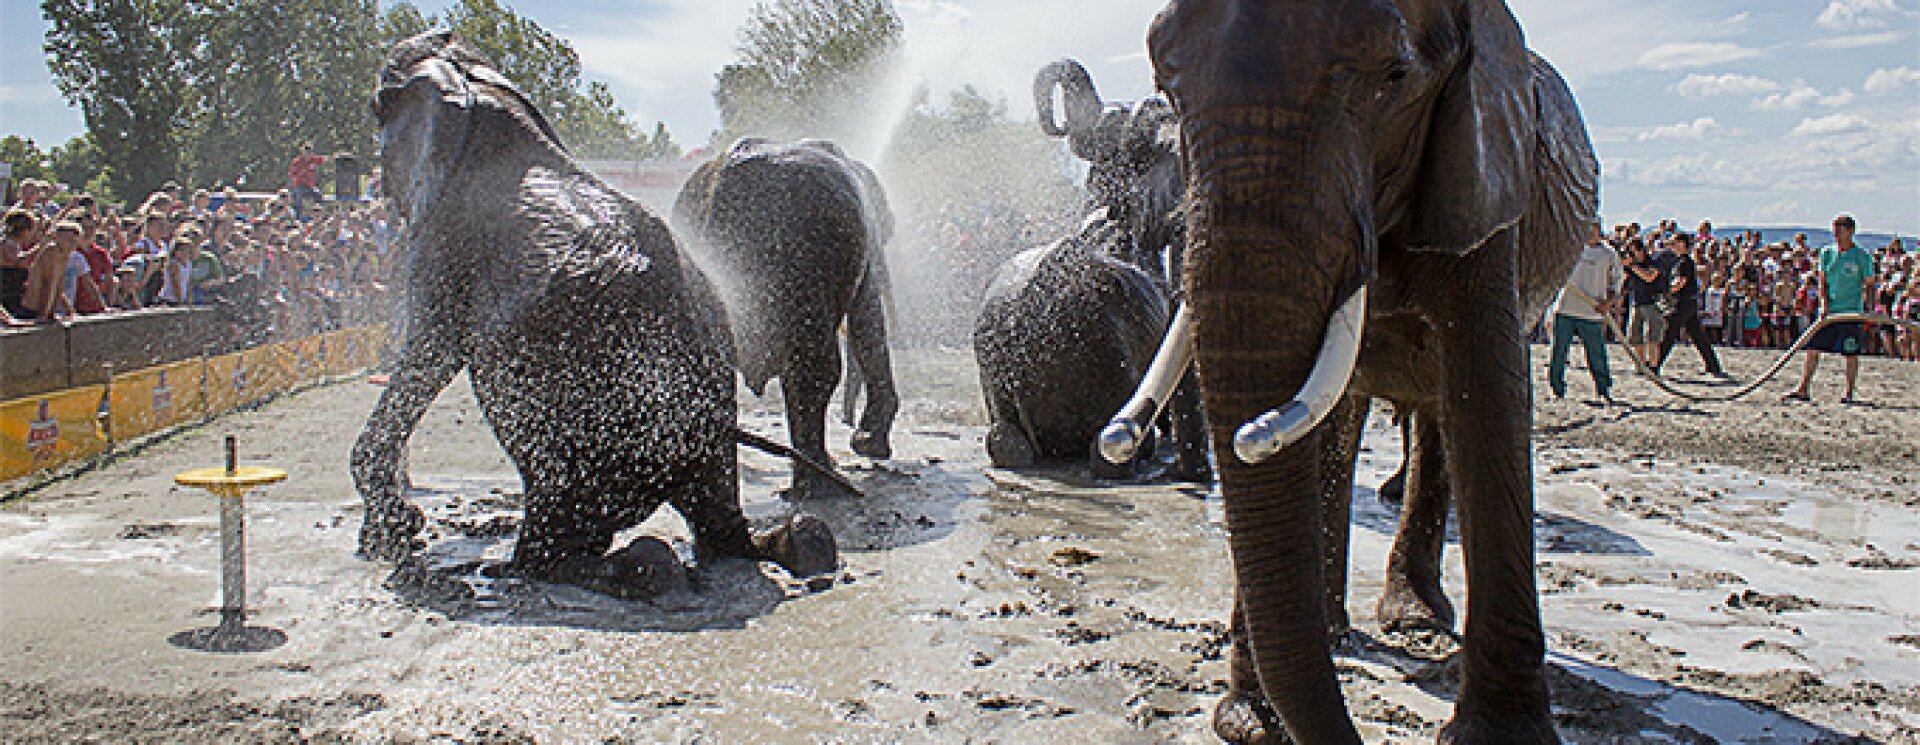 Az elefántok is felfoghatják a halál értelmét, Elefántok látványa